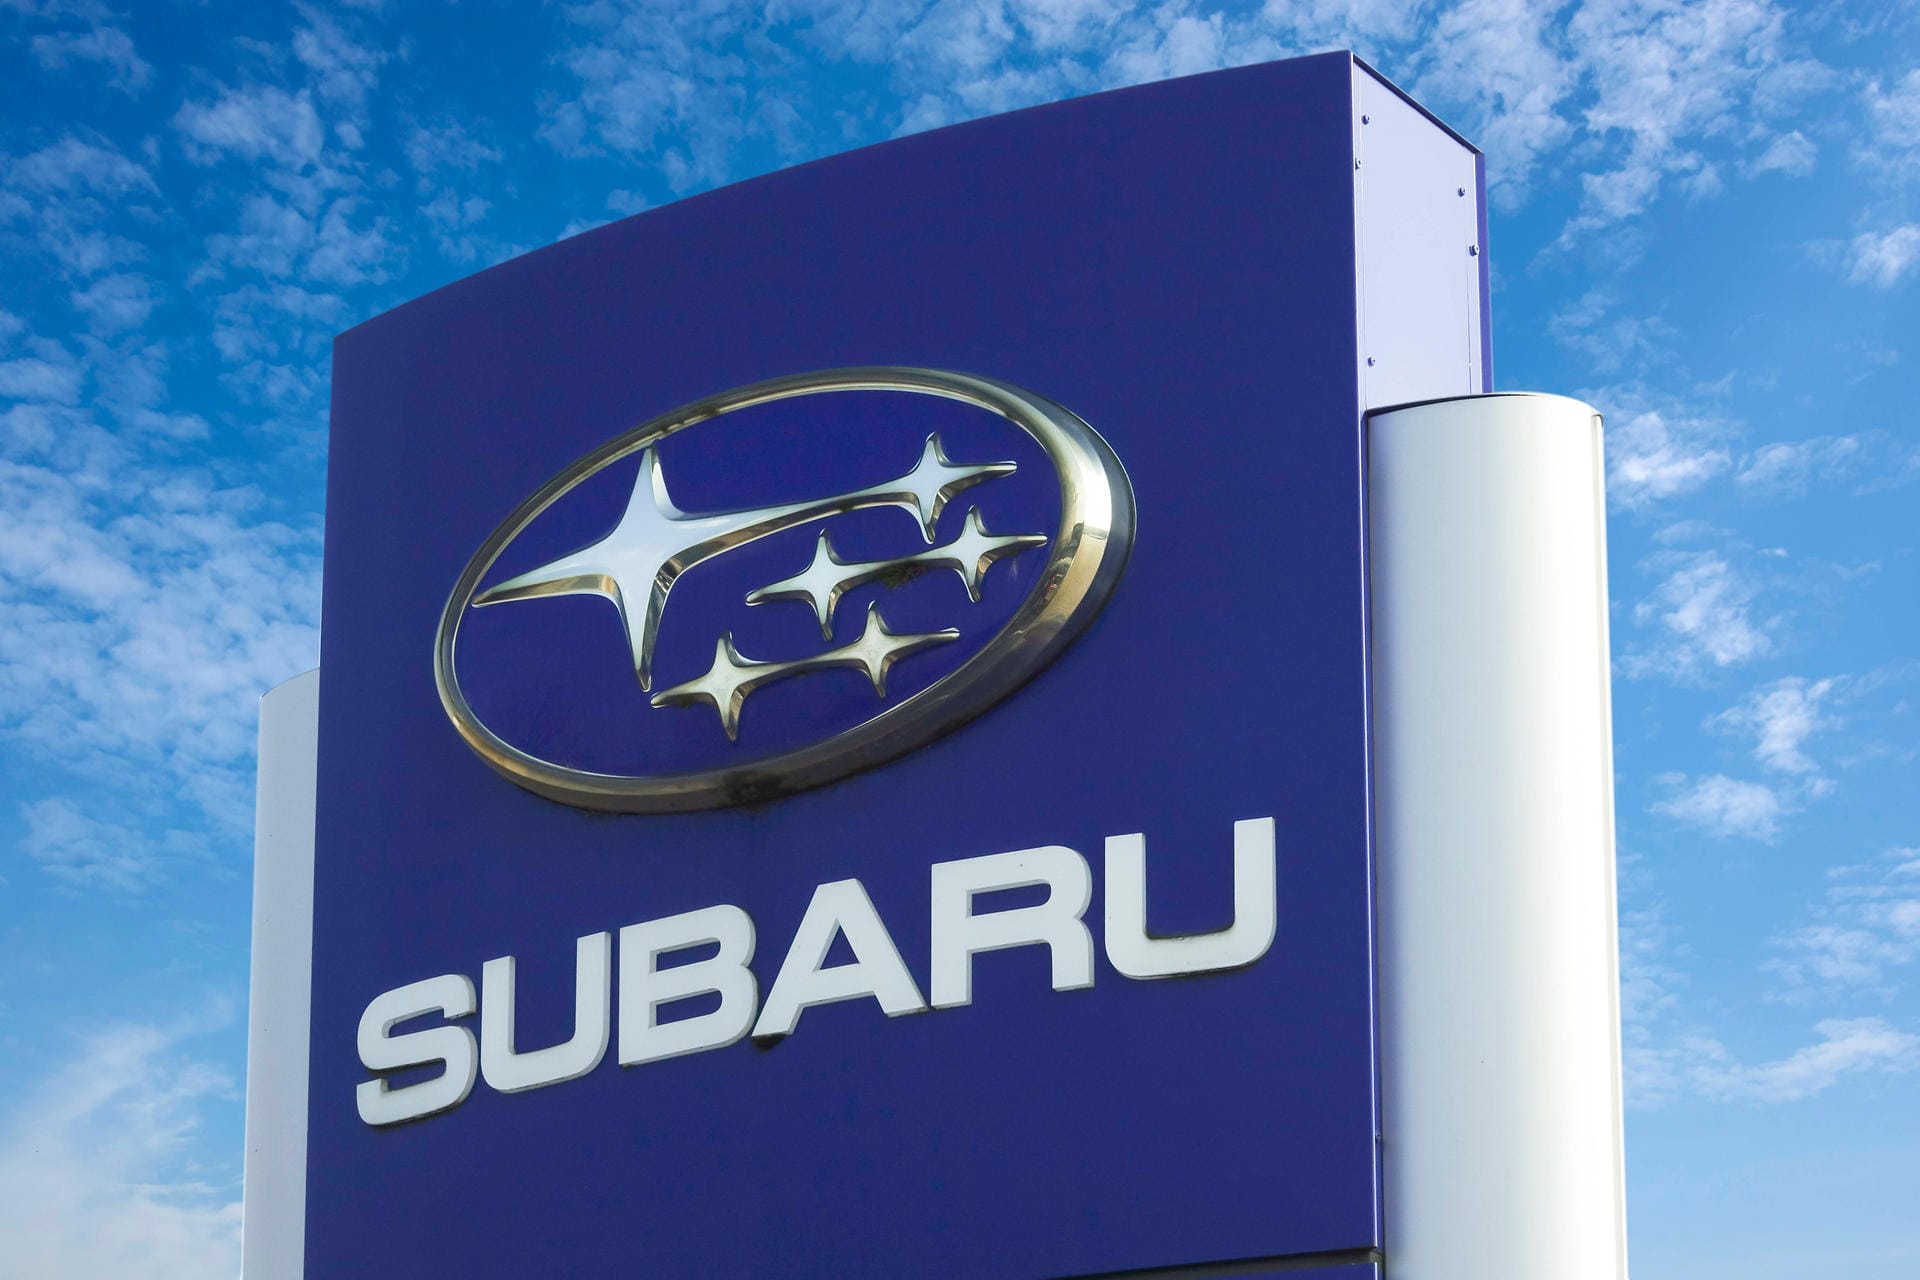 Subaru: Der japanische Hersteller Subaru produzierte als "Nakajima Aircraft Company" zunächst Kriegsflugzeuge. Nach dem zweiten Weltkrieg schwenkte man unter dem Namen "Fuji Heavy Industries" auf Autos um. Der erste große Erfolg war das Modell "P1". Er sollte mit einem neuen Namen für die Automarke gekrönt werden. "Subaru" heißt übersetzt "sich zusammentun" und bezeichnet den Sternenhaufen der Plejaden, welche im Logo zu sehen sind.